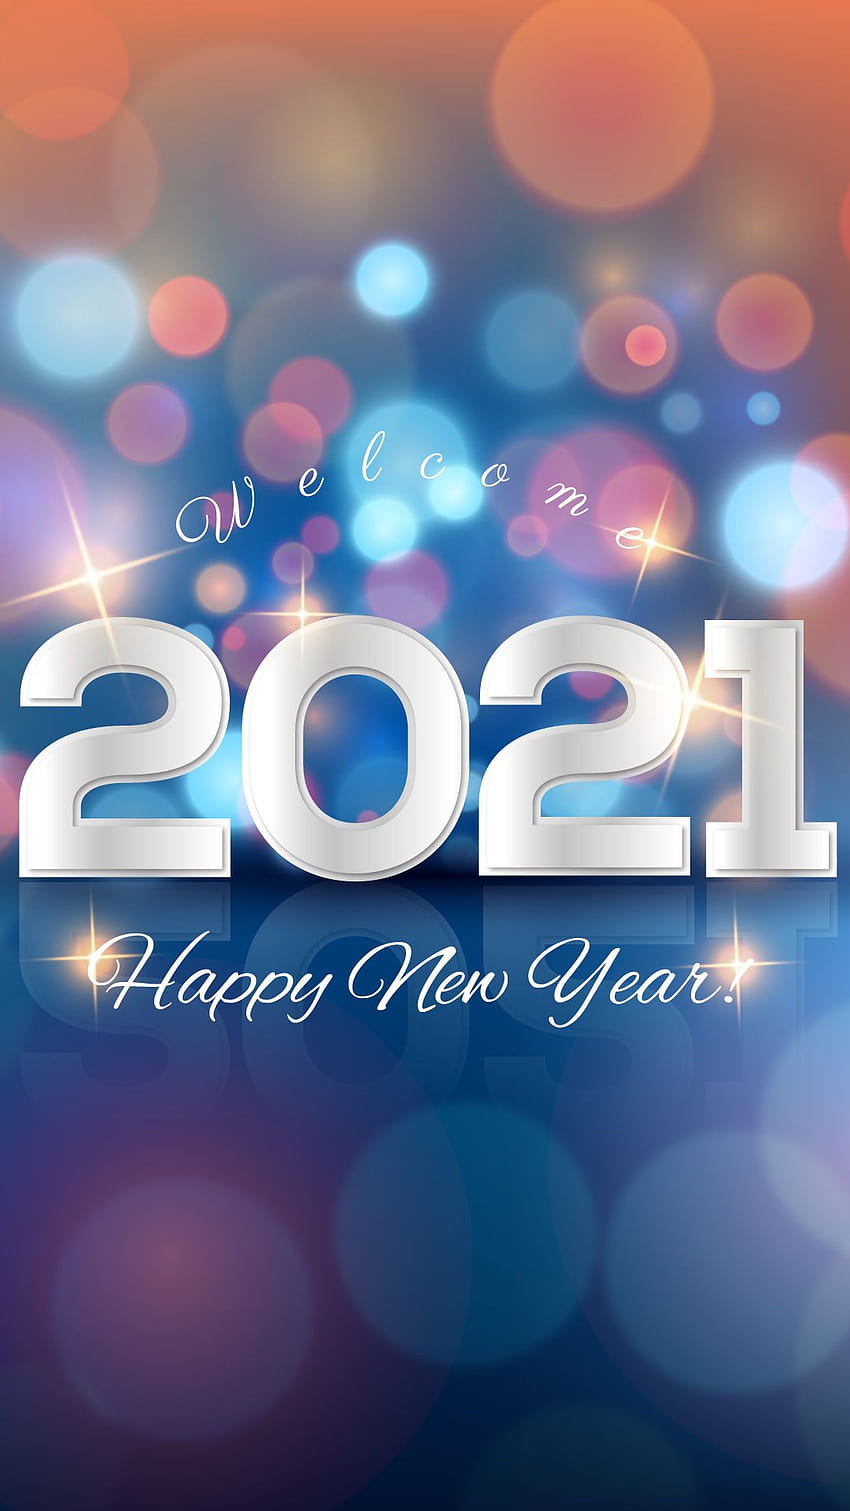 Selamat datang Selamat Tahun Baru 2021, selamat tahun baru 2021 wallpaper ponsel HD